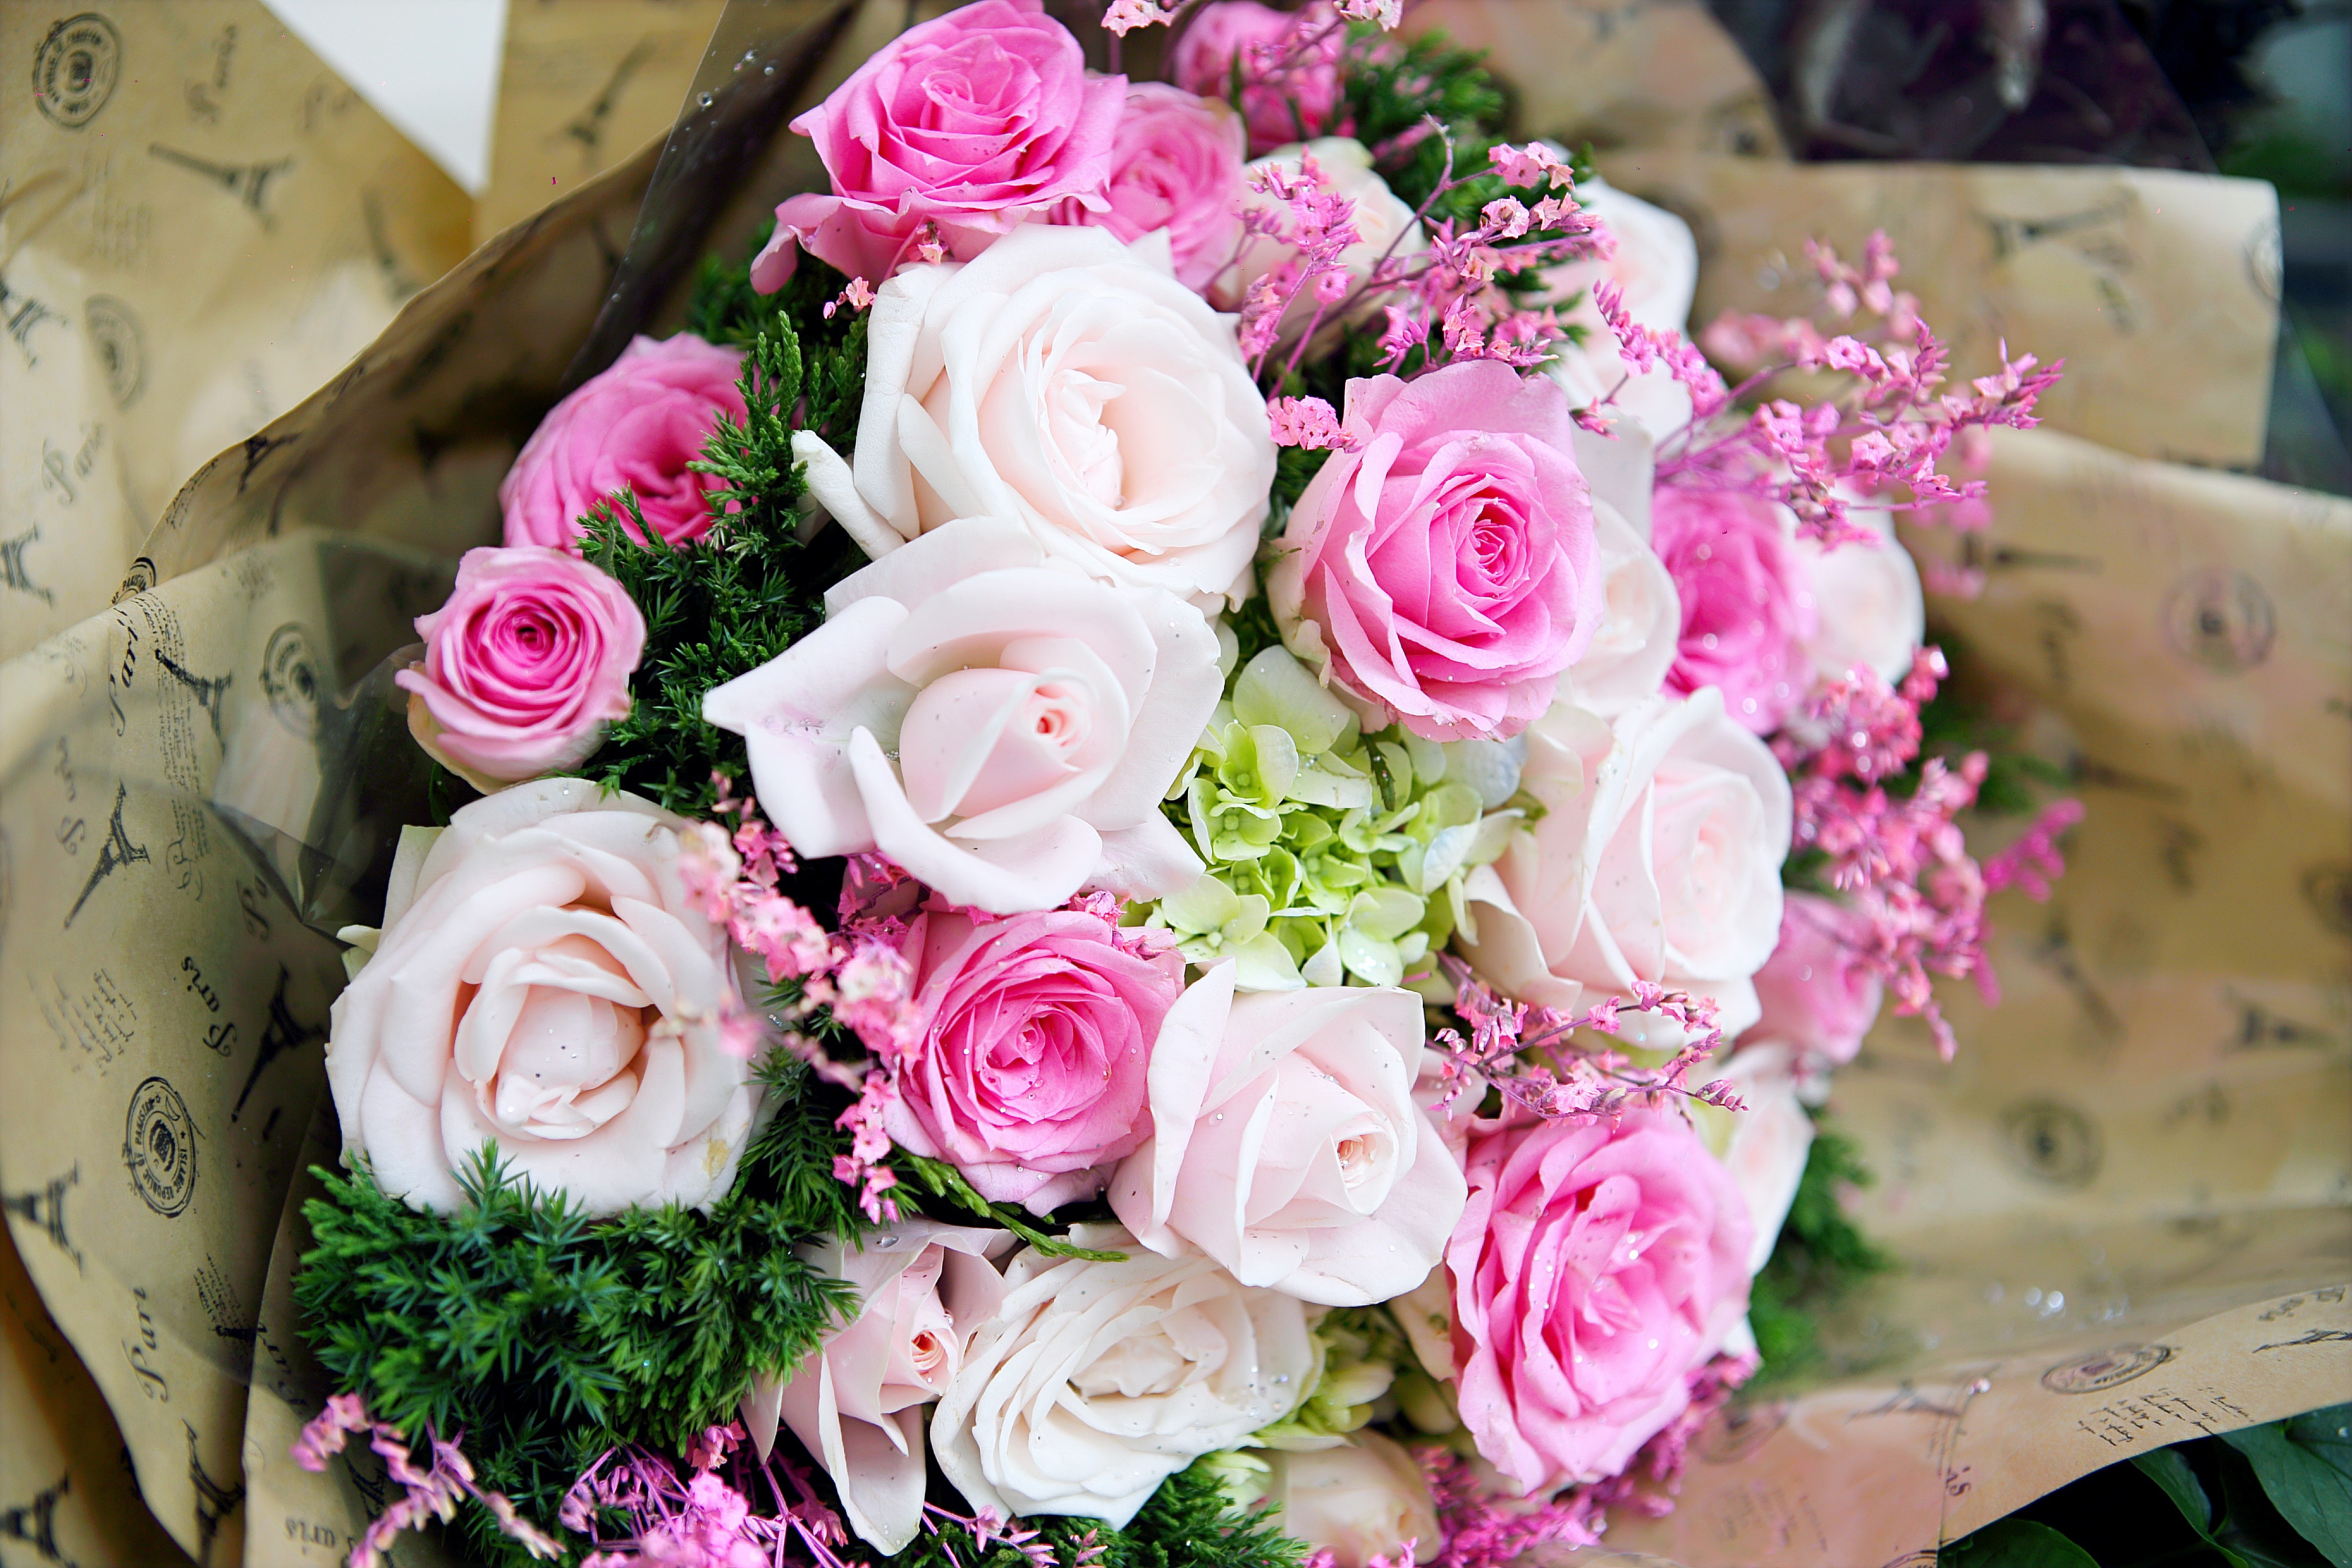 Скачать обои бесплатно Цветок, Роза, Букет, Белый Цветок, Сделано Человеком, Розовый Цветок картинка на рабочий стол ПК